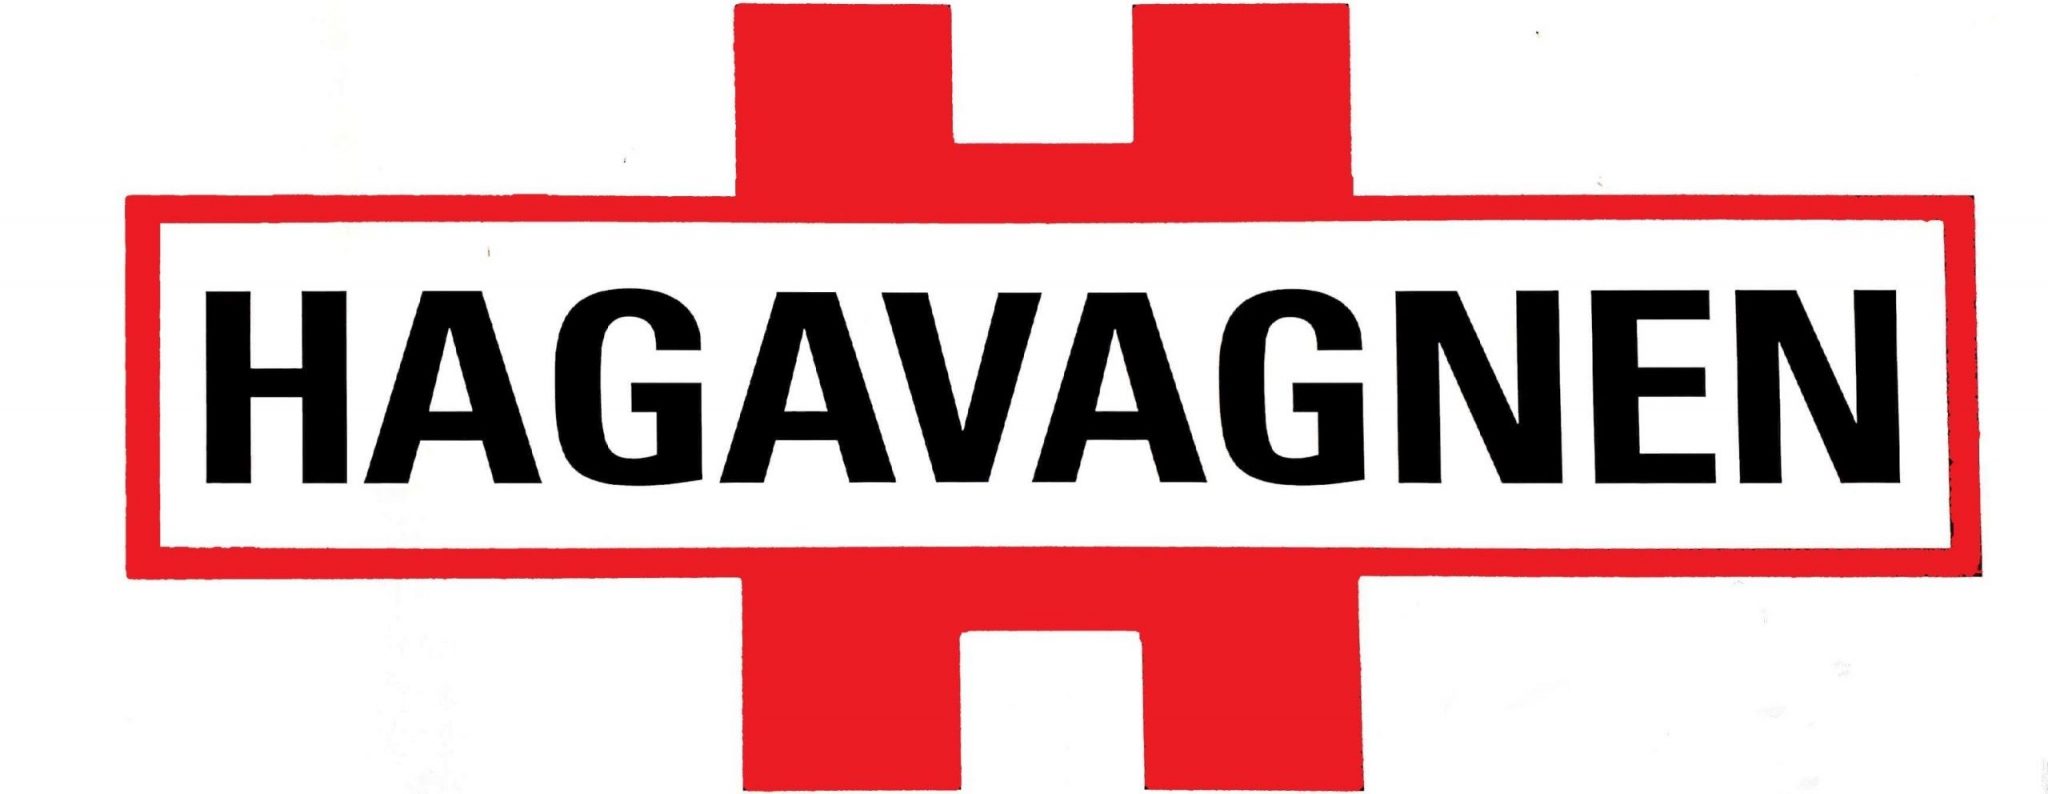 Hagavagnen logo